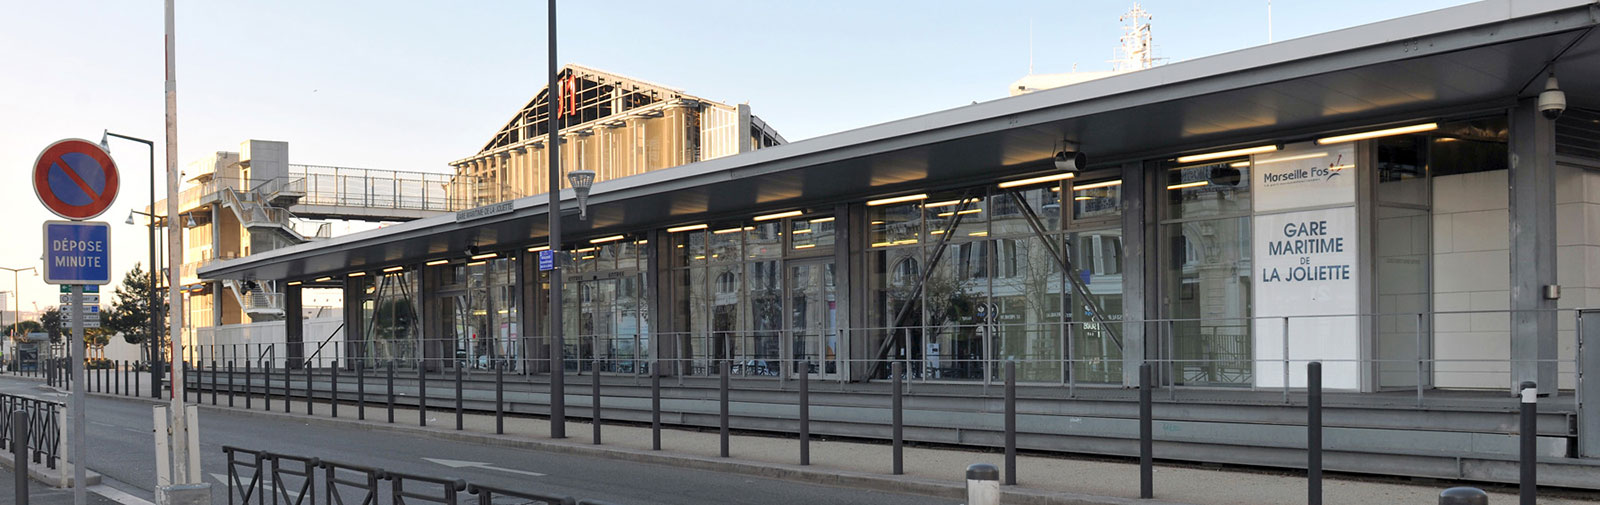 Gare de la Joliette